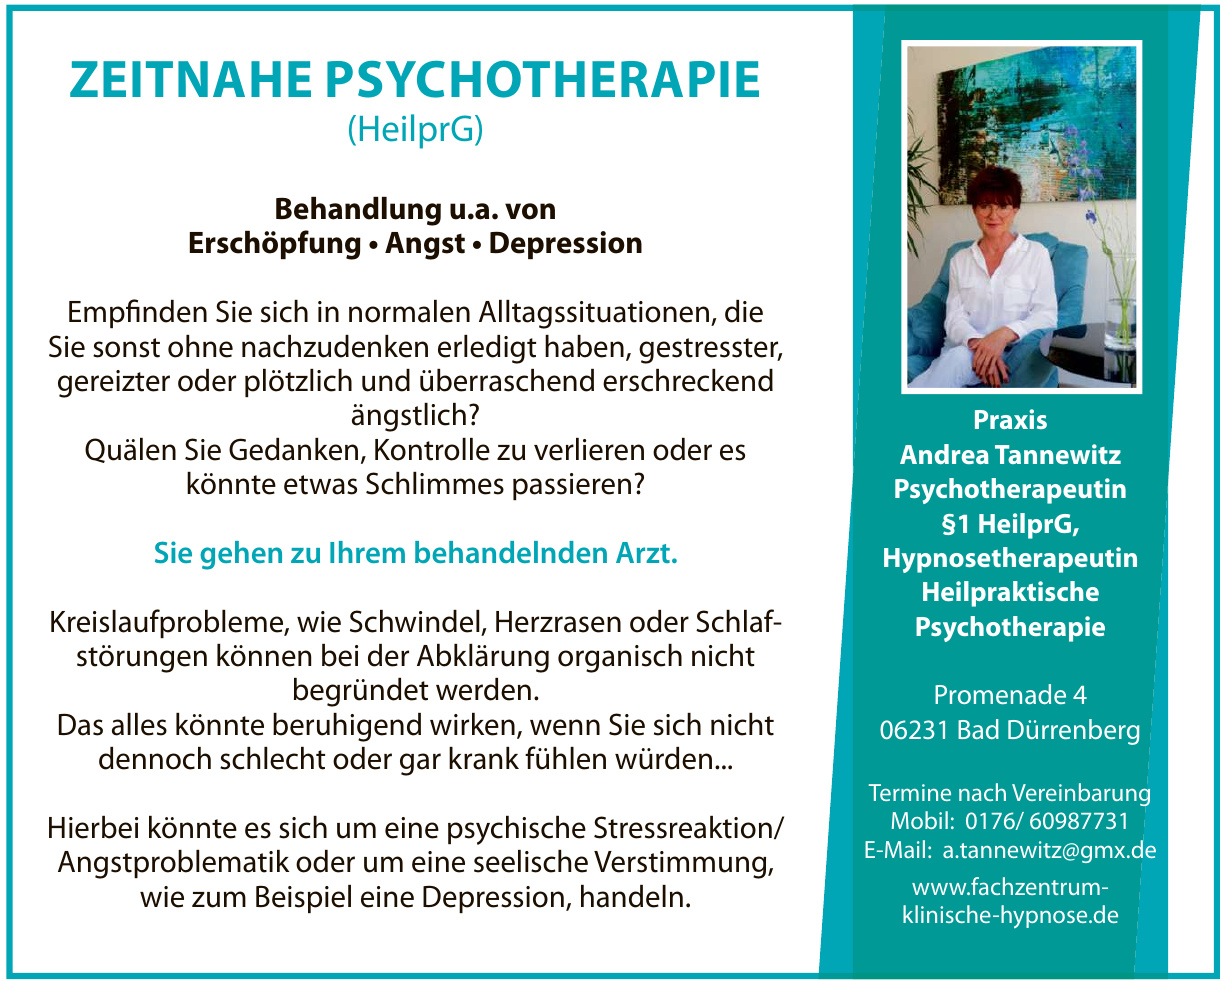 Fachzentrum klinische Hypnose-Praxis Andrea Tannewitz